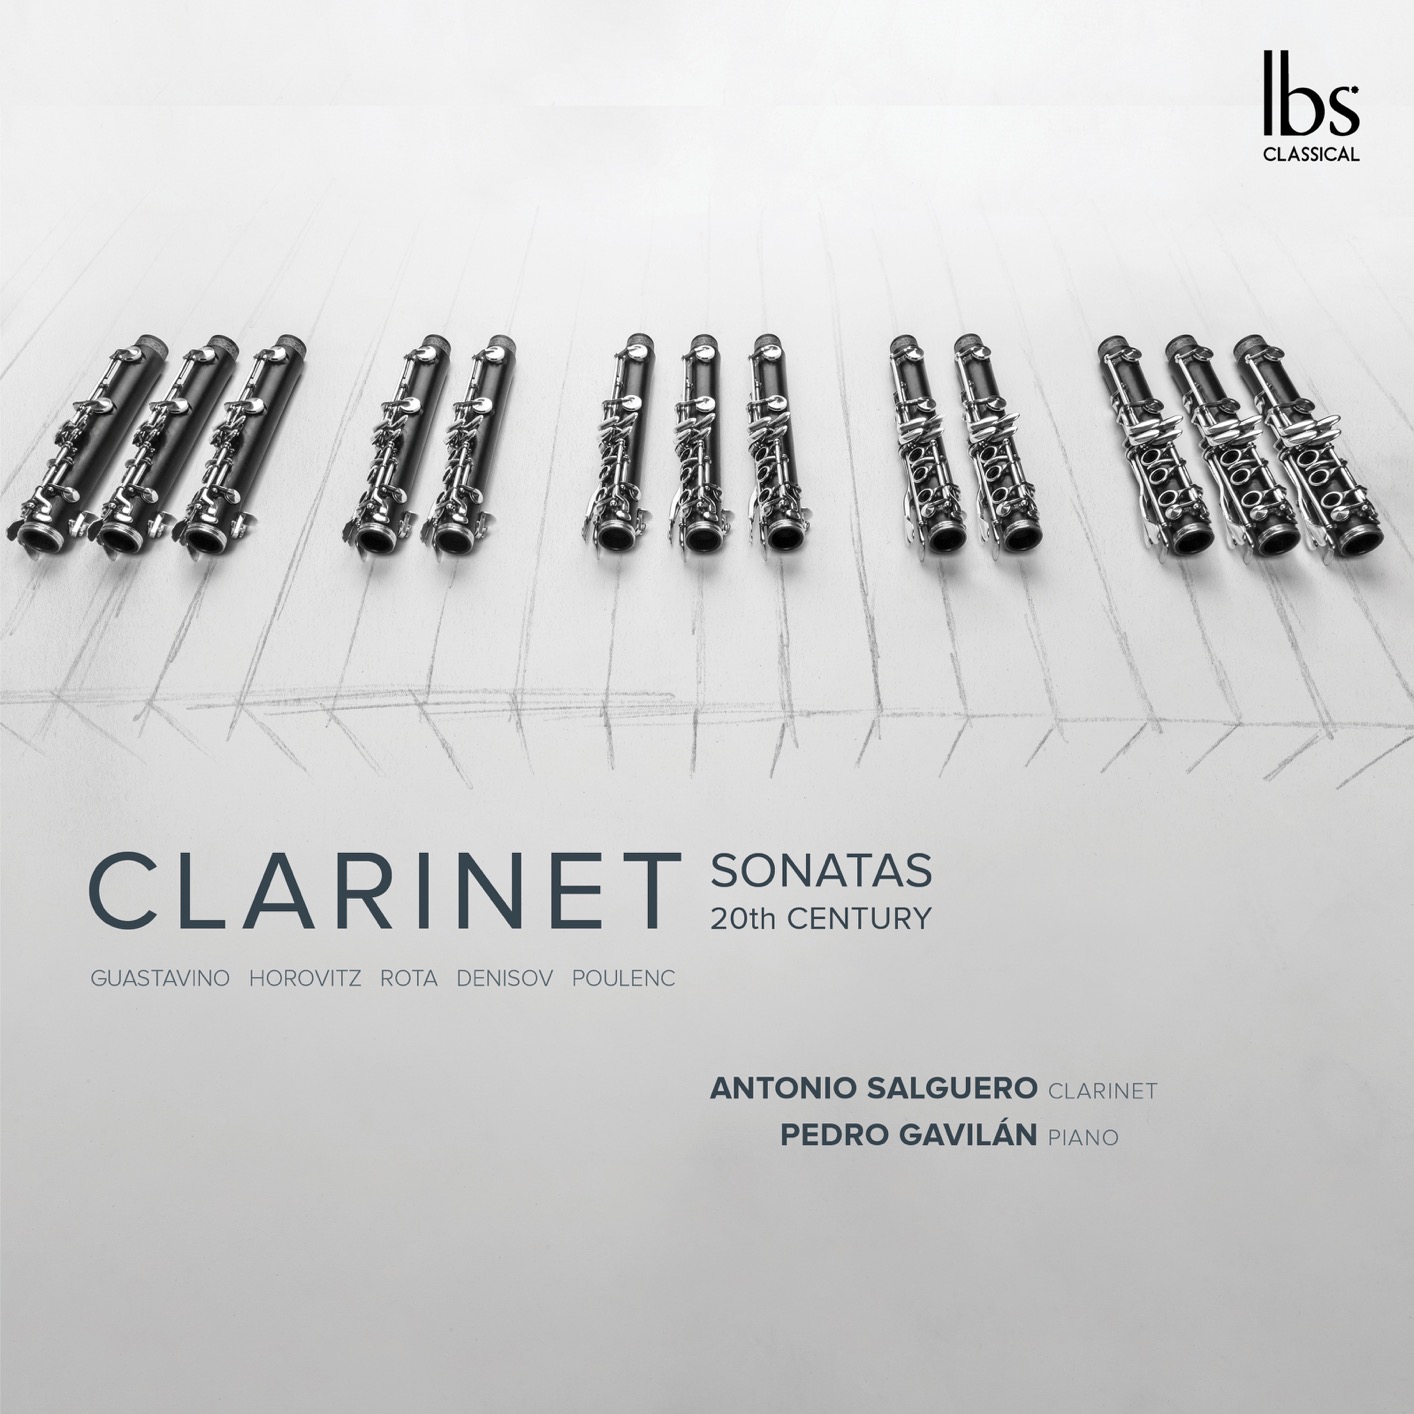 Antonio Salguero & Pedro Gavilan – Clarinet Sonatas 20th Century (2018) [FLAC 24bit/96kHz]